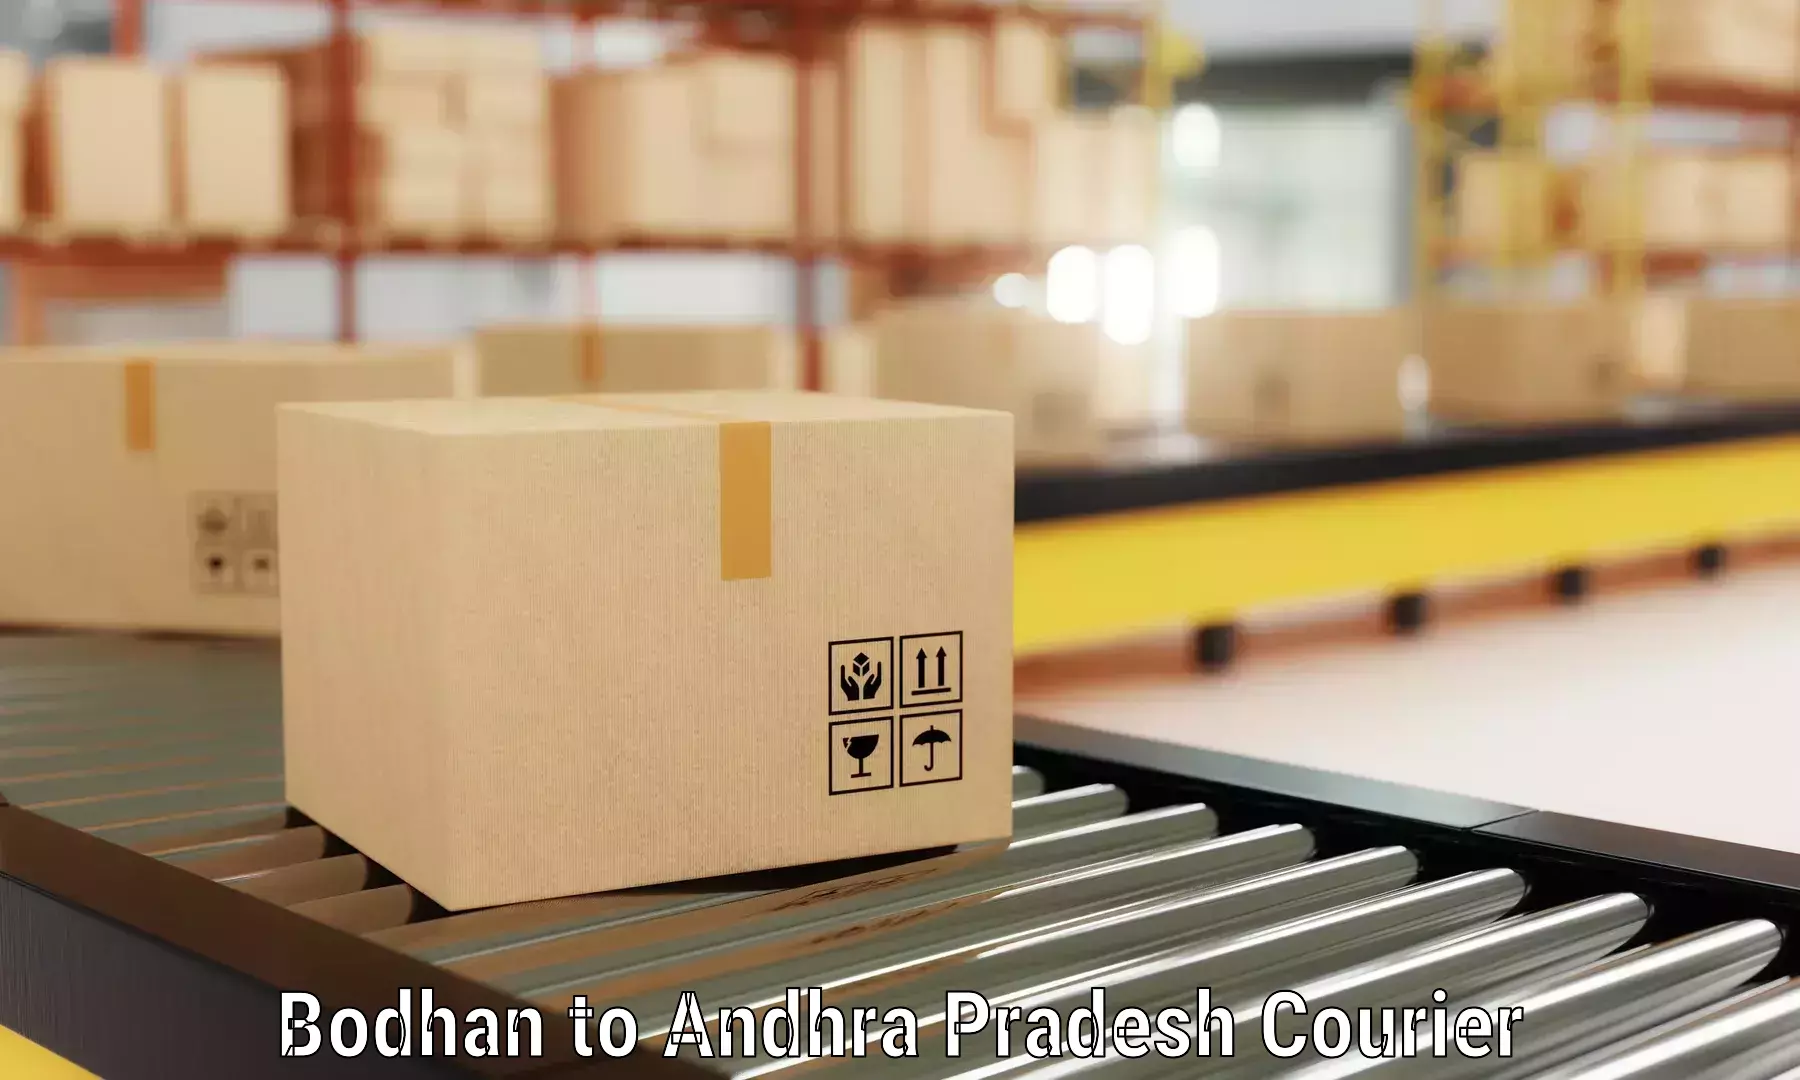 Furniture transport experts Bodhan to Amadalavalasa